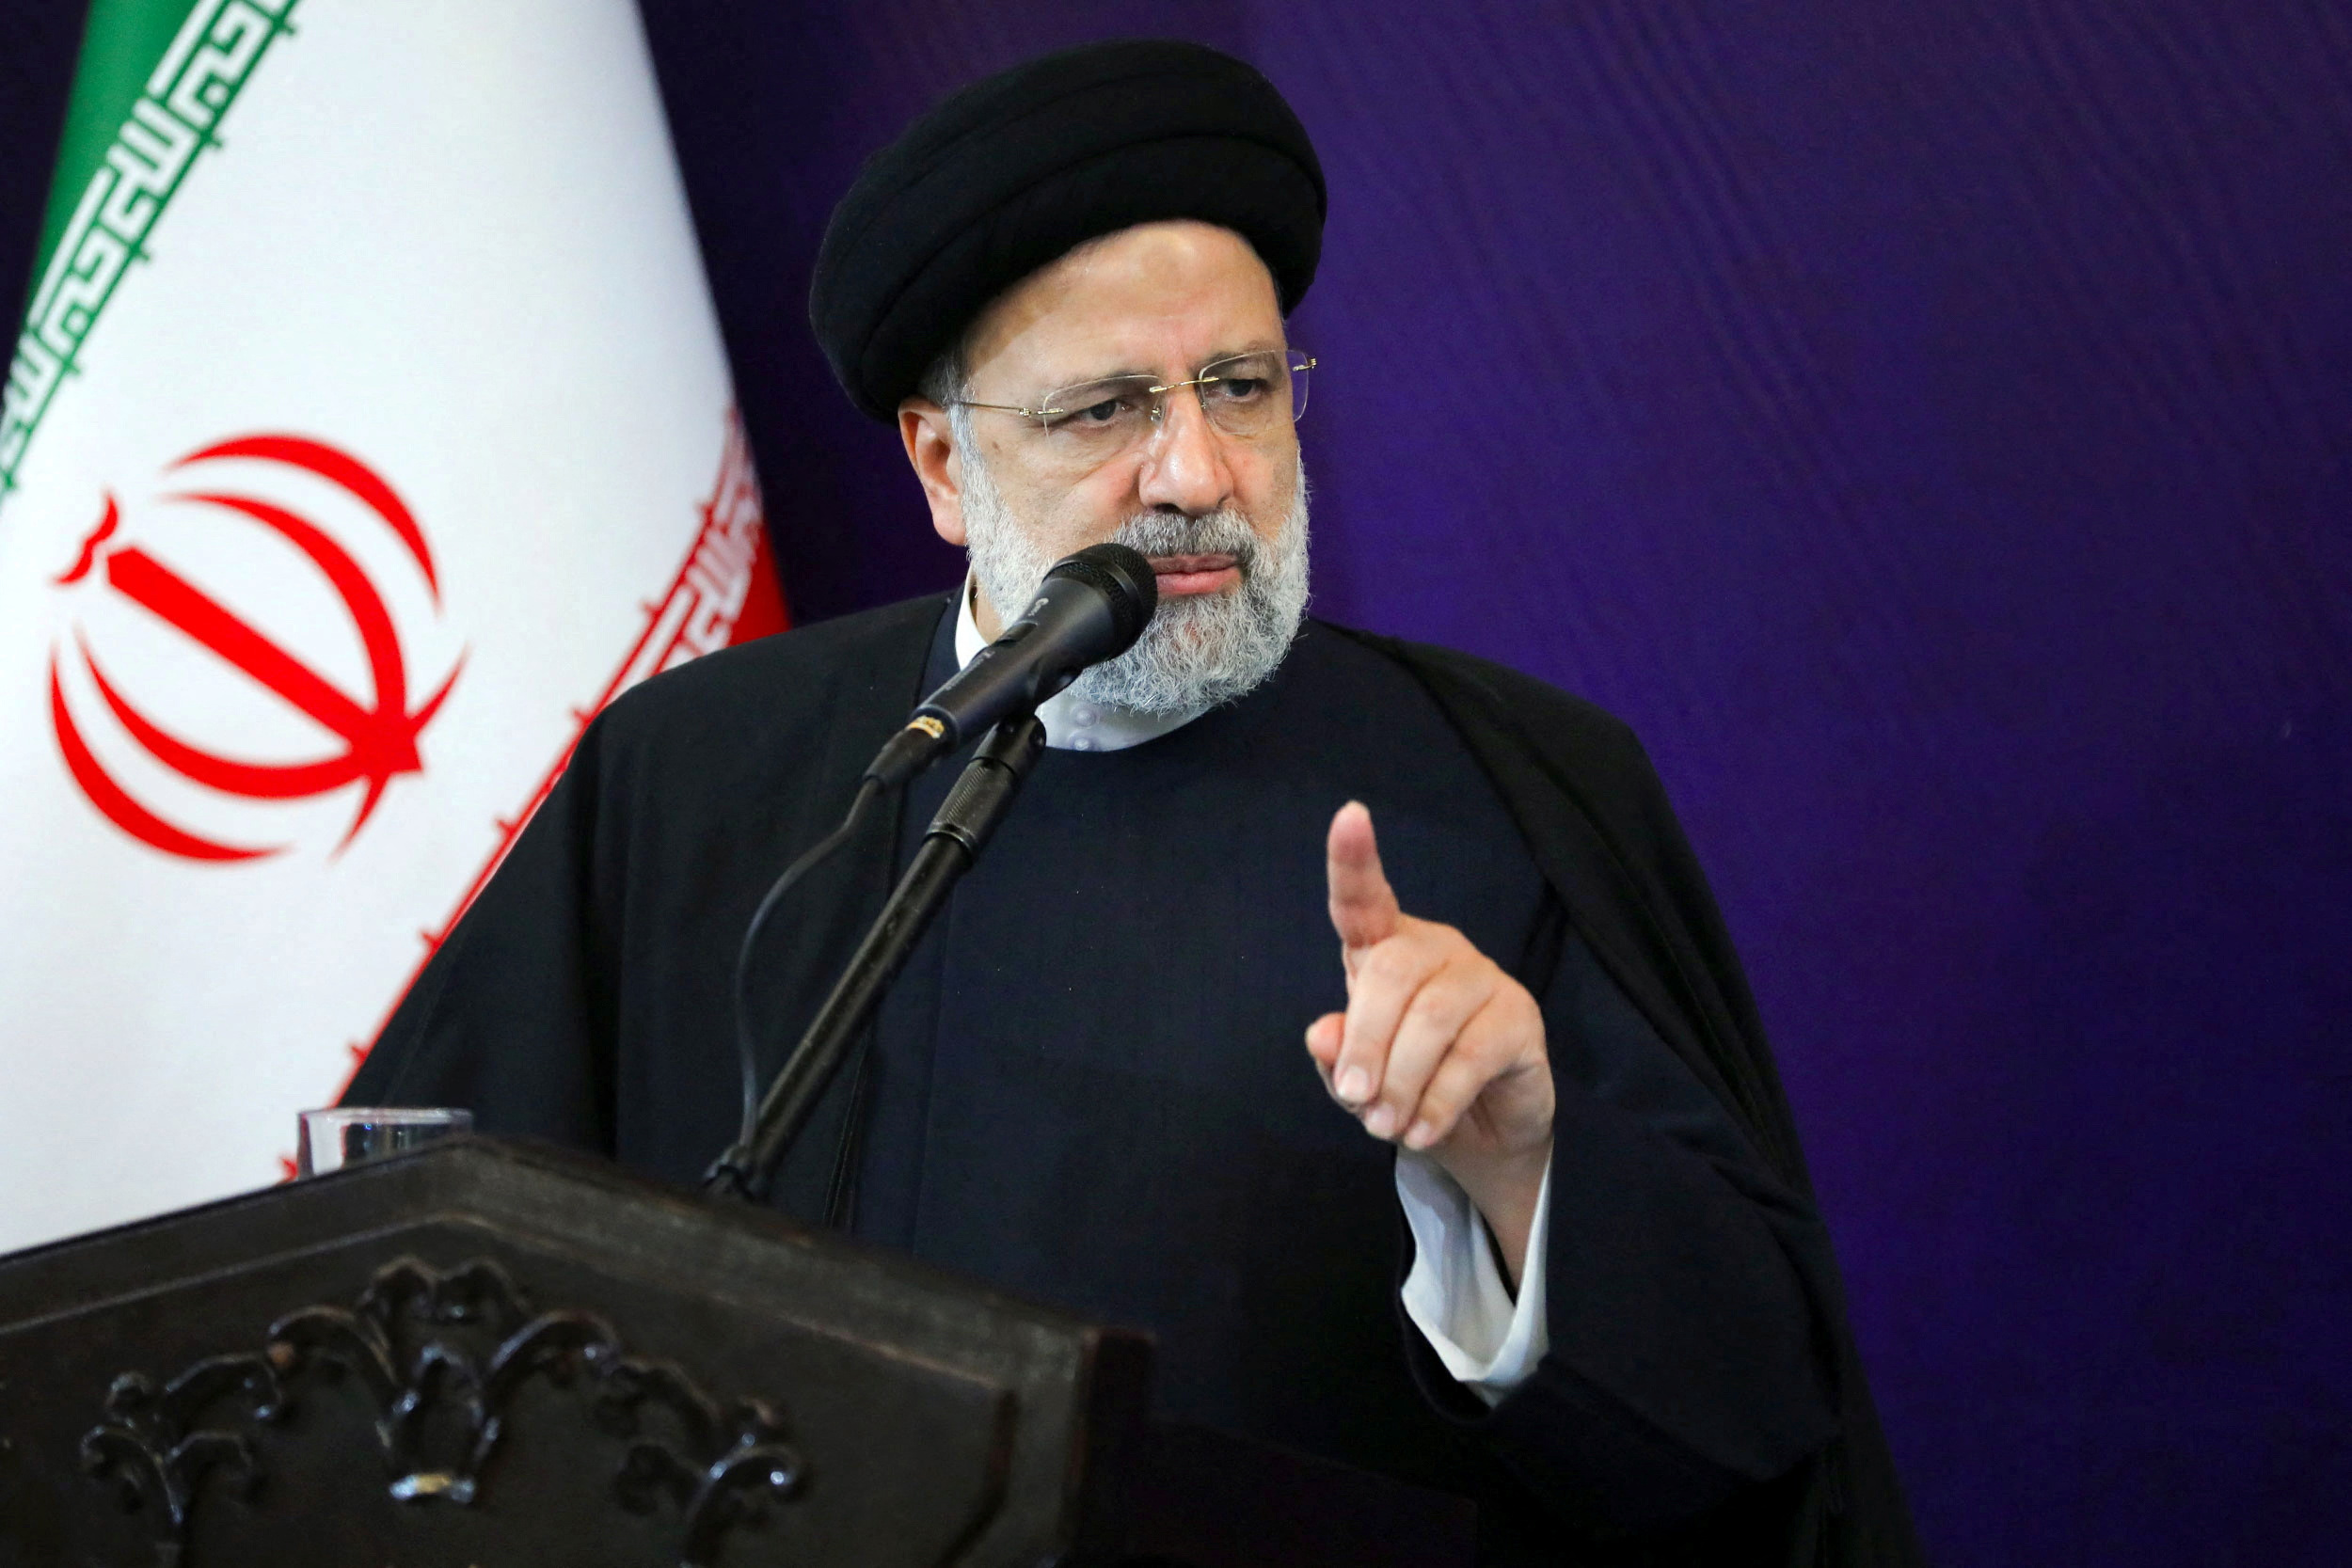 Ιράν: «Κανένα έλεος» για τους εχθρούς της Ισλαμικής Δημοκρατίας - Απειλεί ο Εμπραχίμ Ραϊσί